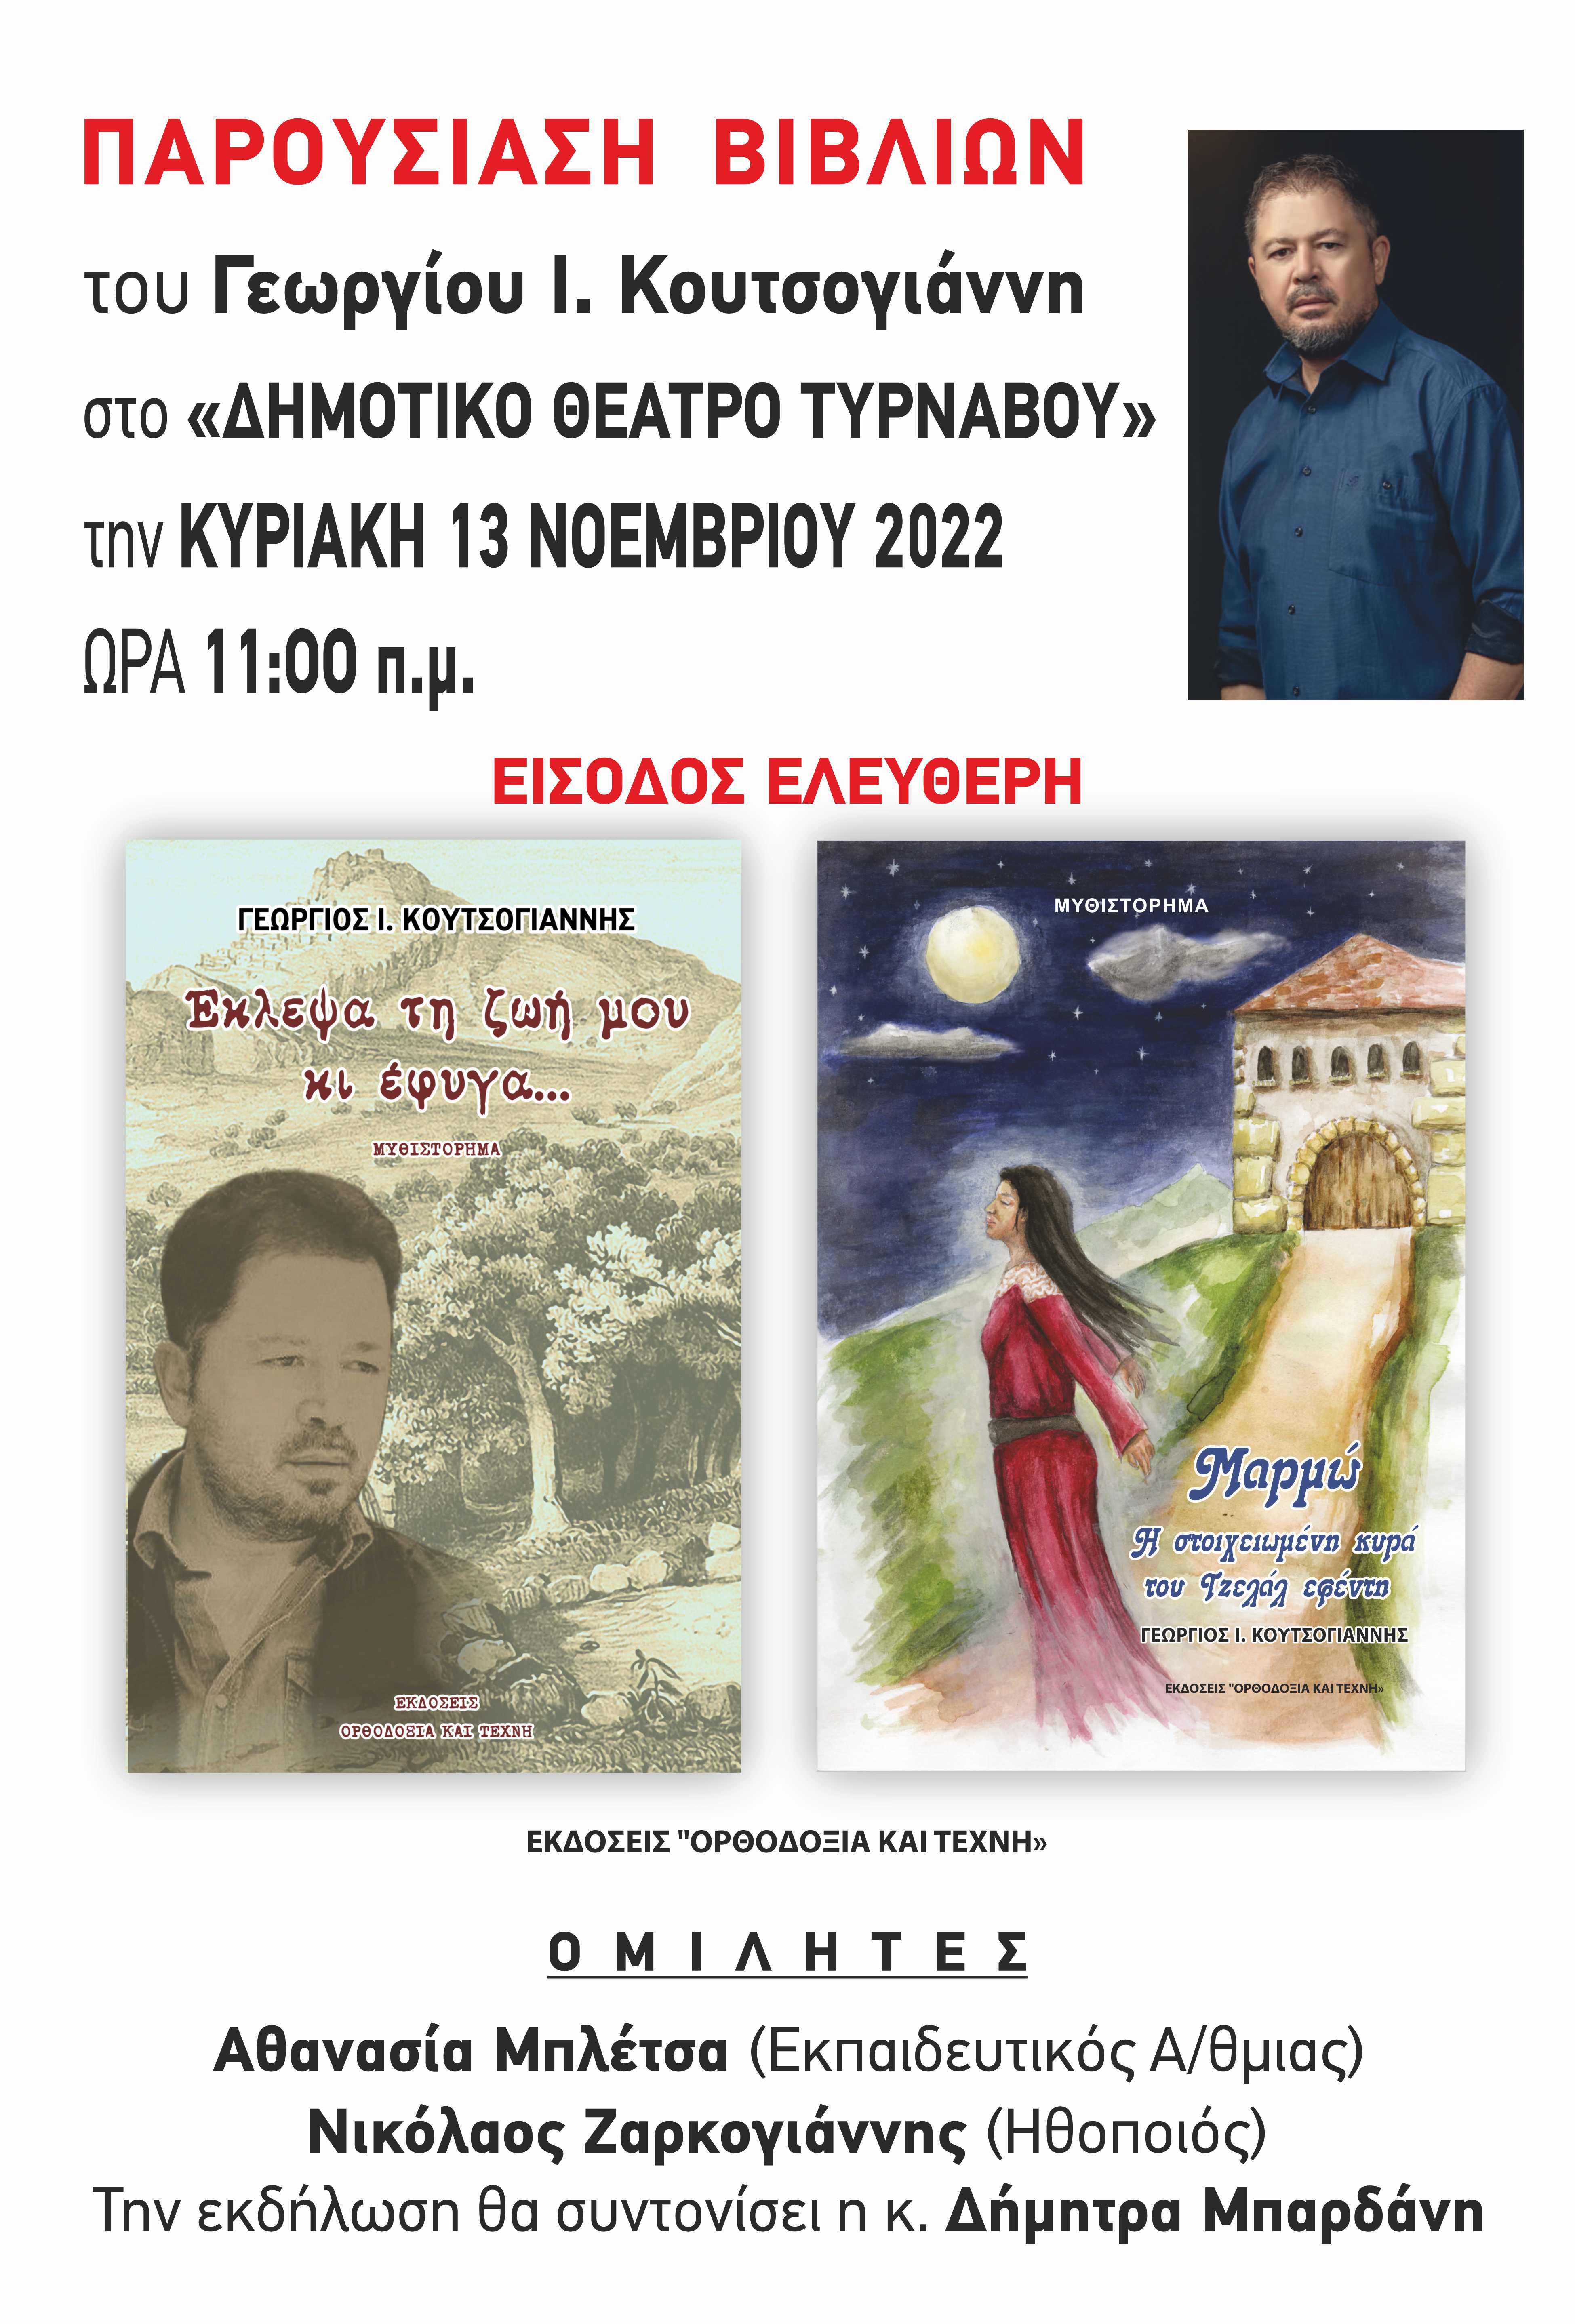 Παρουσίαση βιβλίων στο Δημοτικό Θέατρο Τυρνάβου